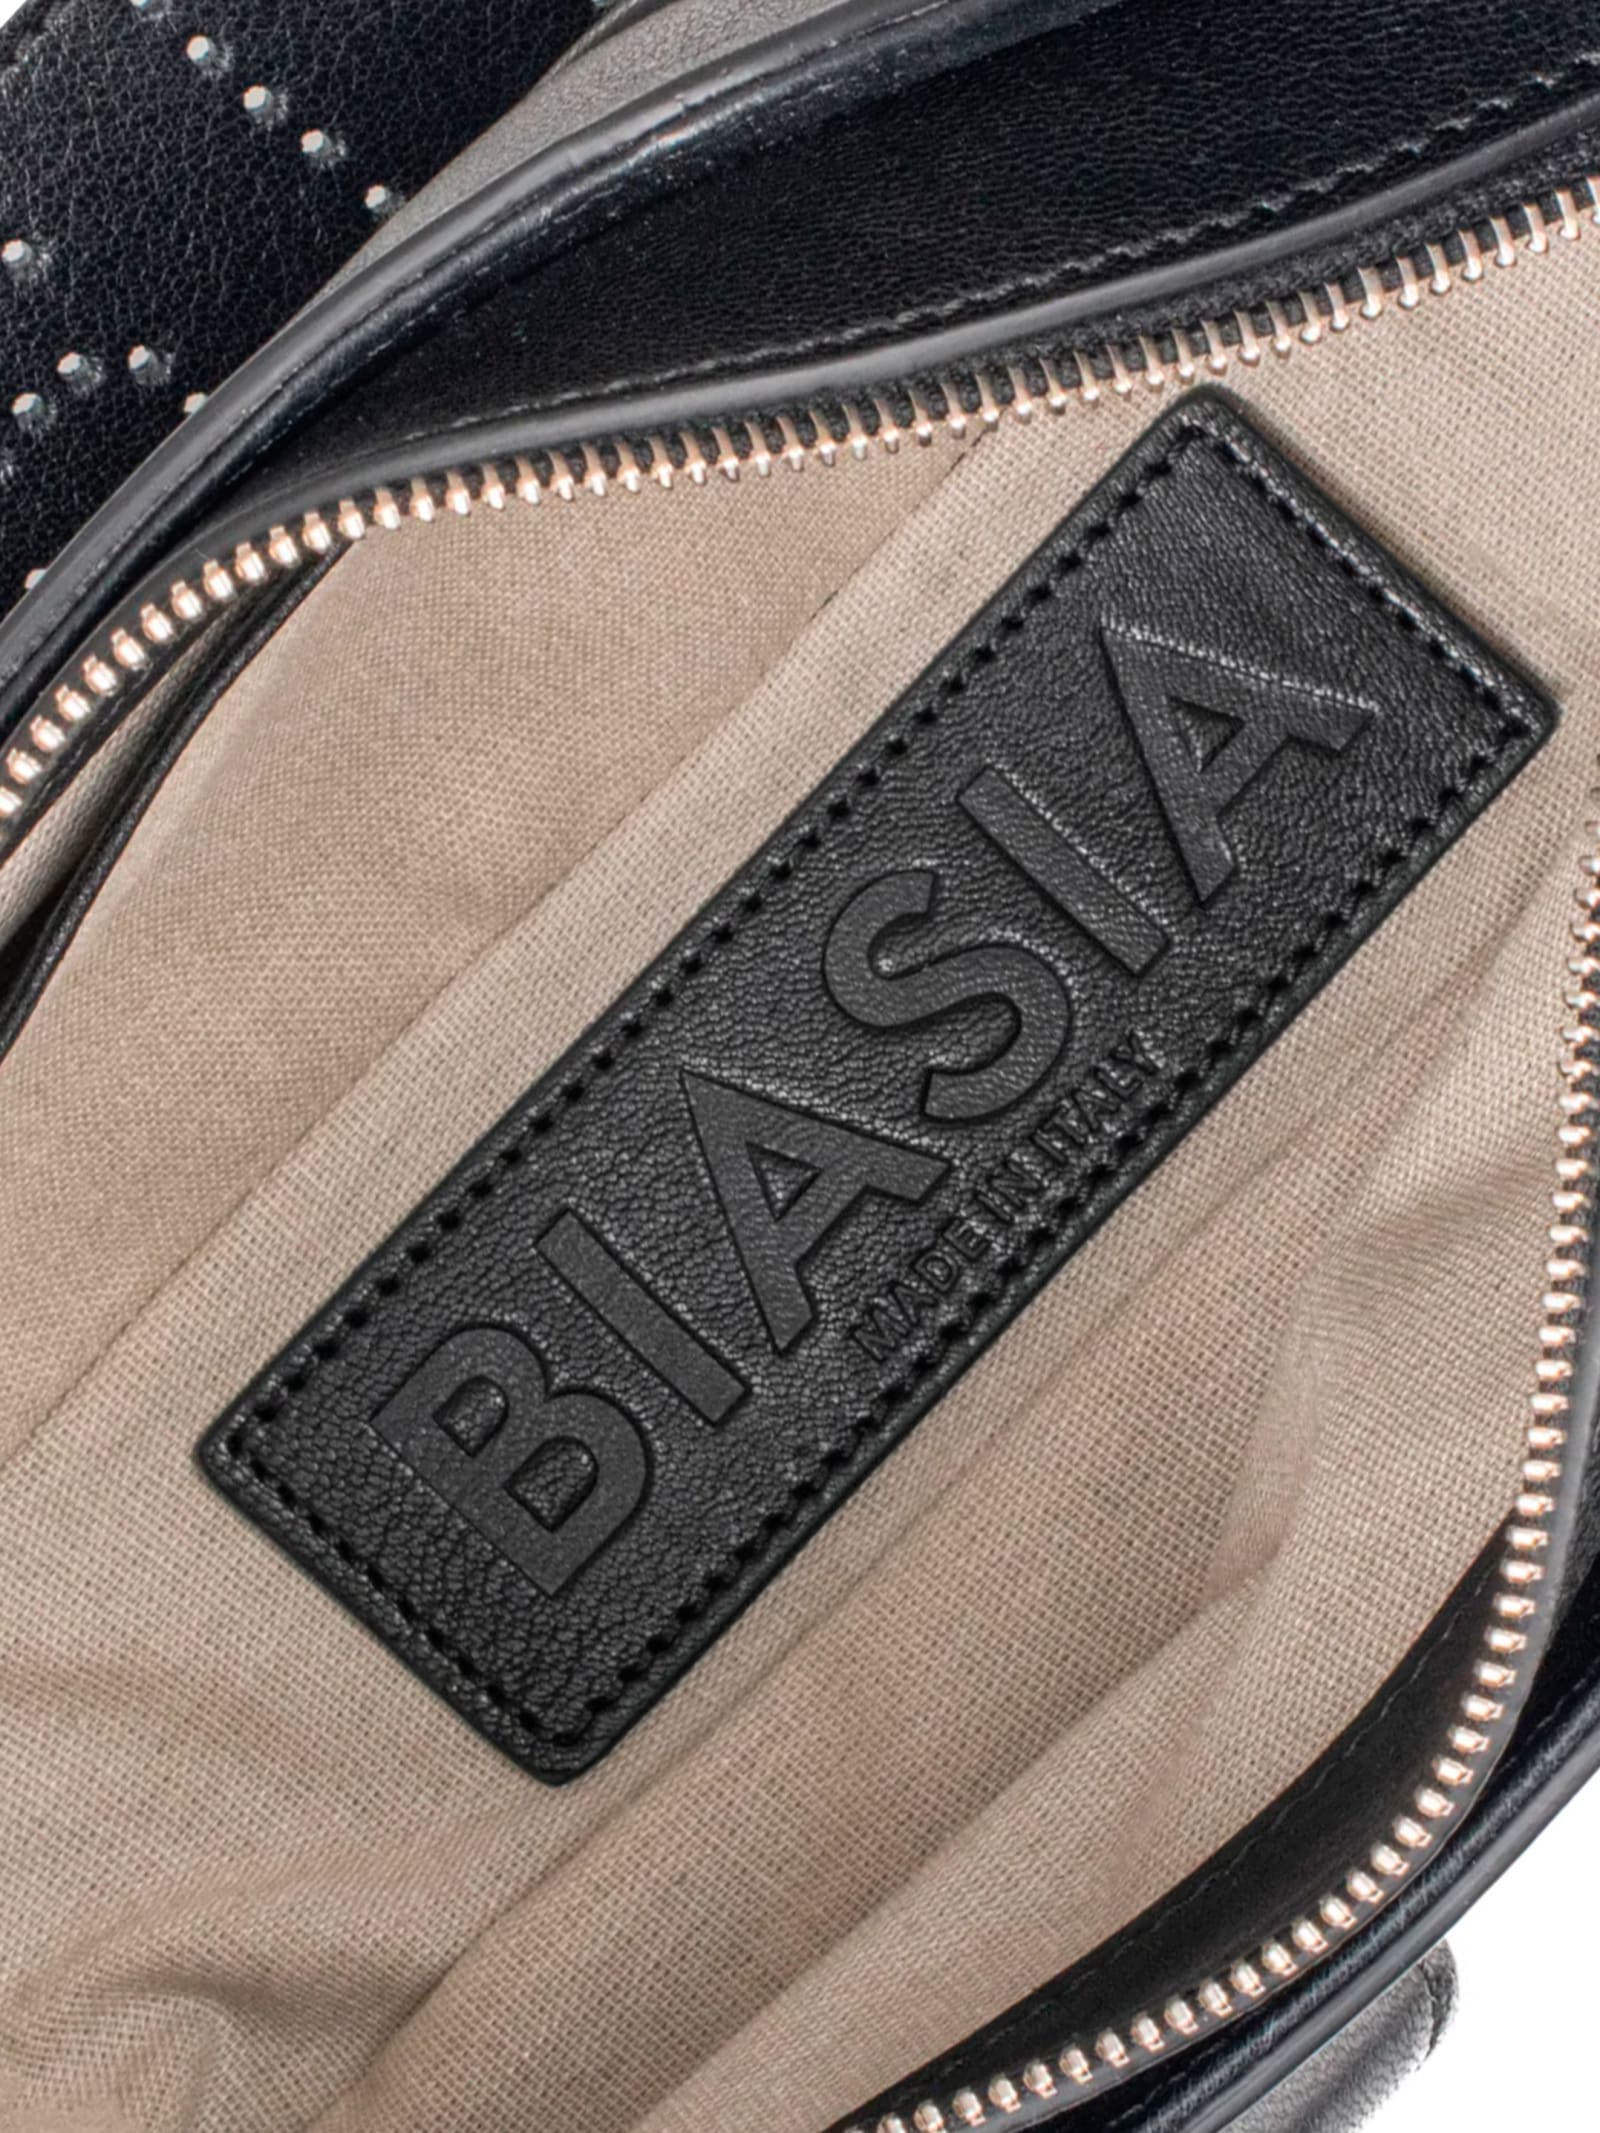 Shop Biasia Shoulder Bag Y2k.001 In Black